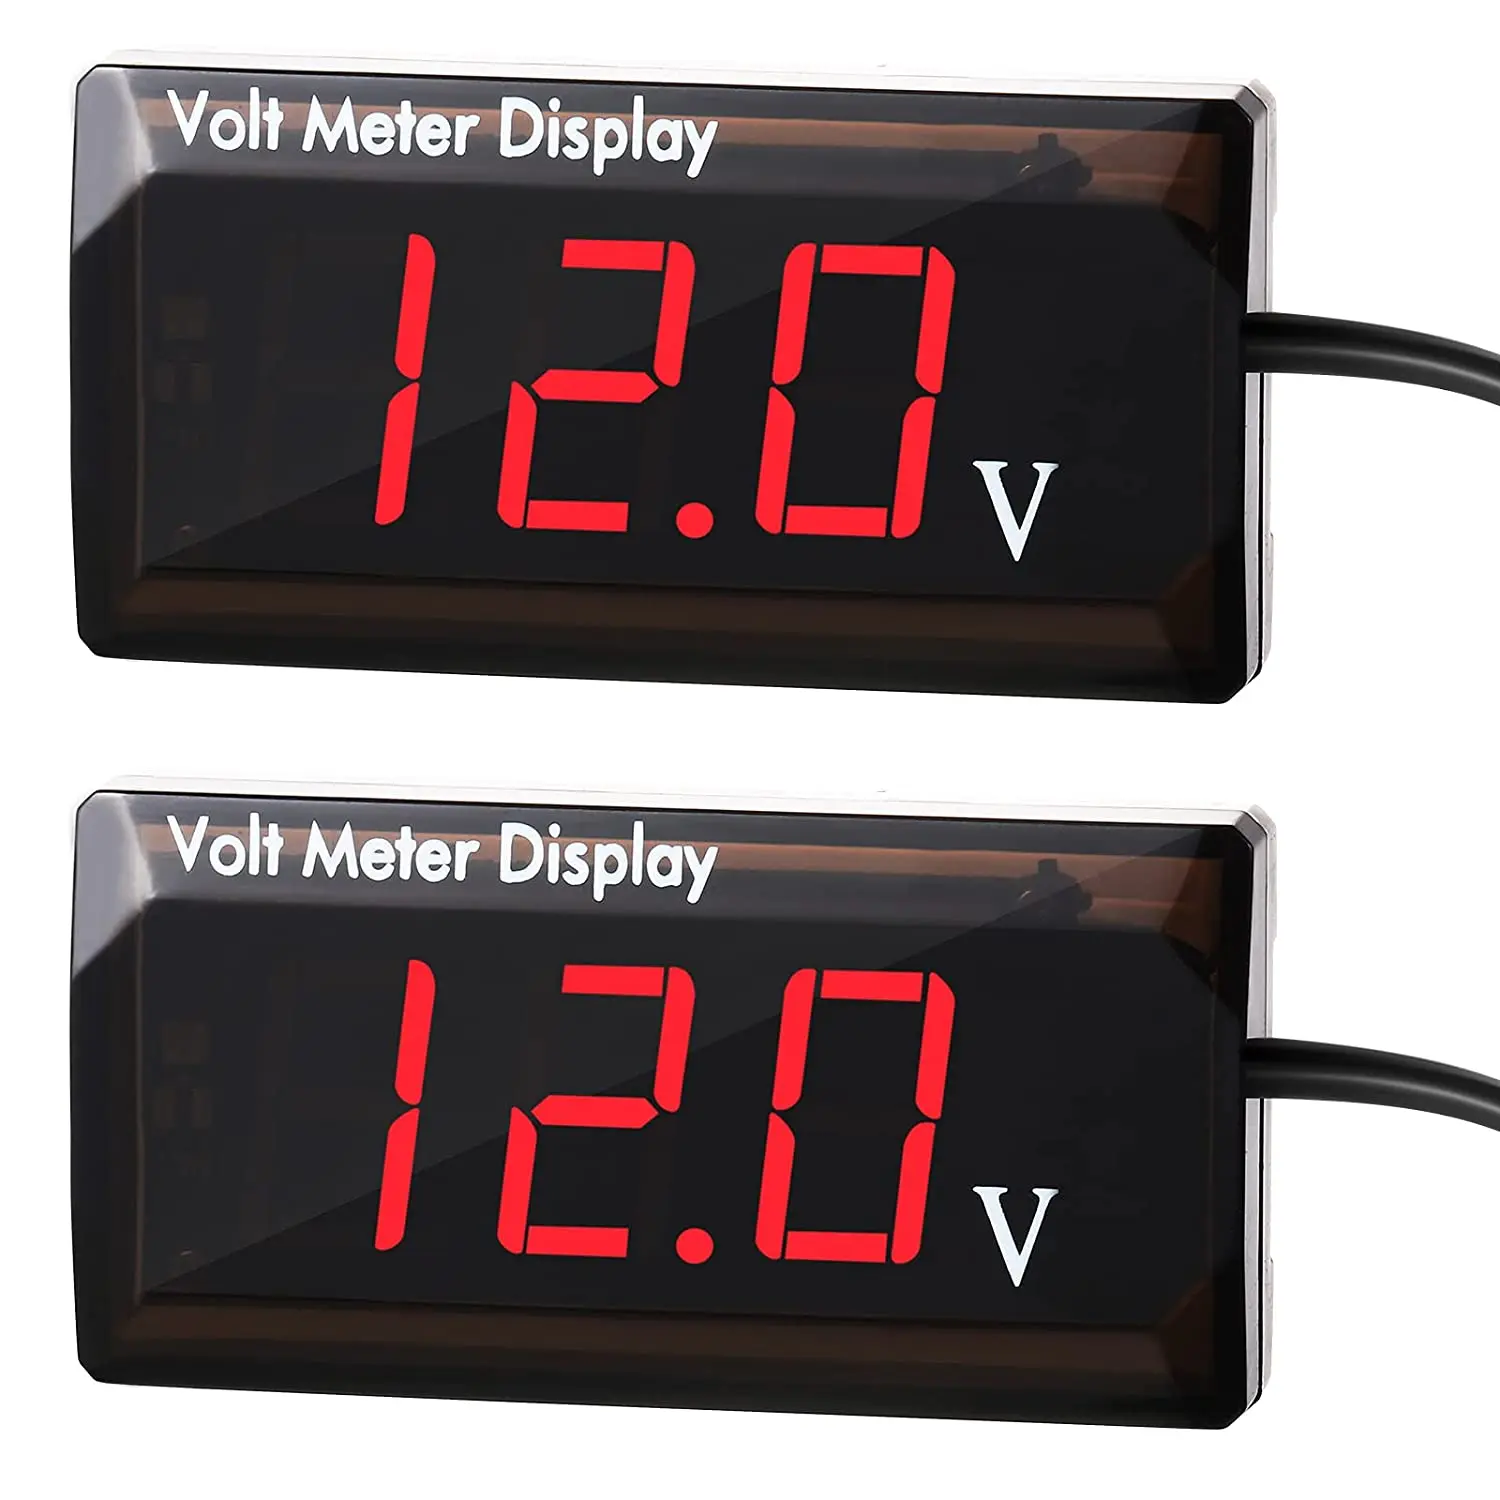 12V Digital Voltage Display Meter Tester Voltmeter for Car Motorcycle AIMILAR DC 12 Volt Meter Gauge White 